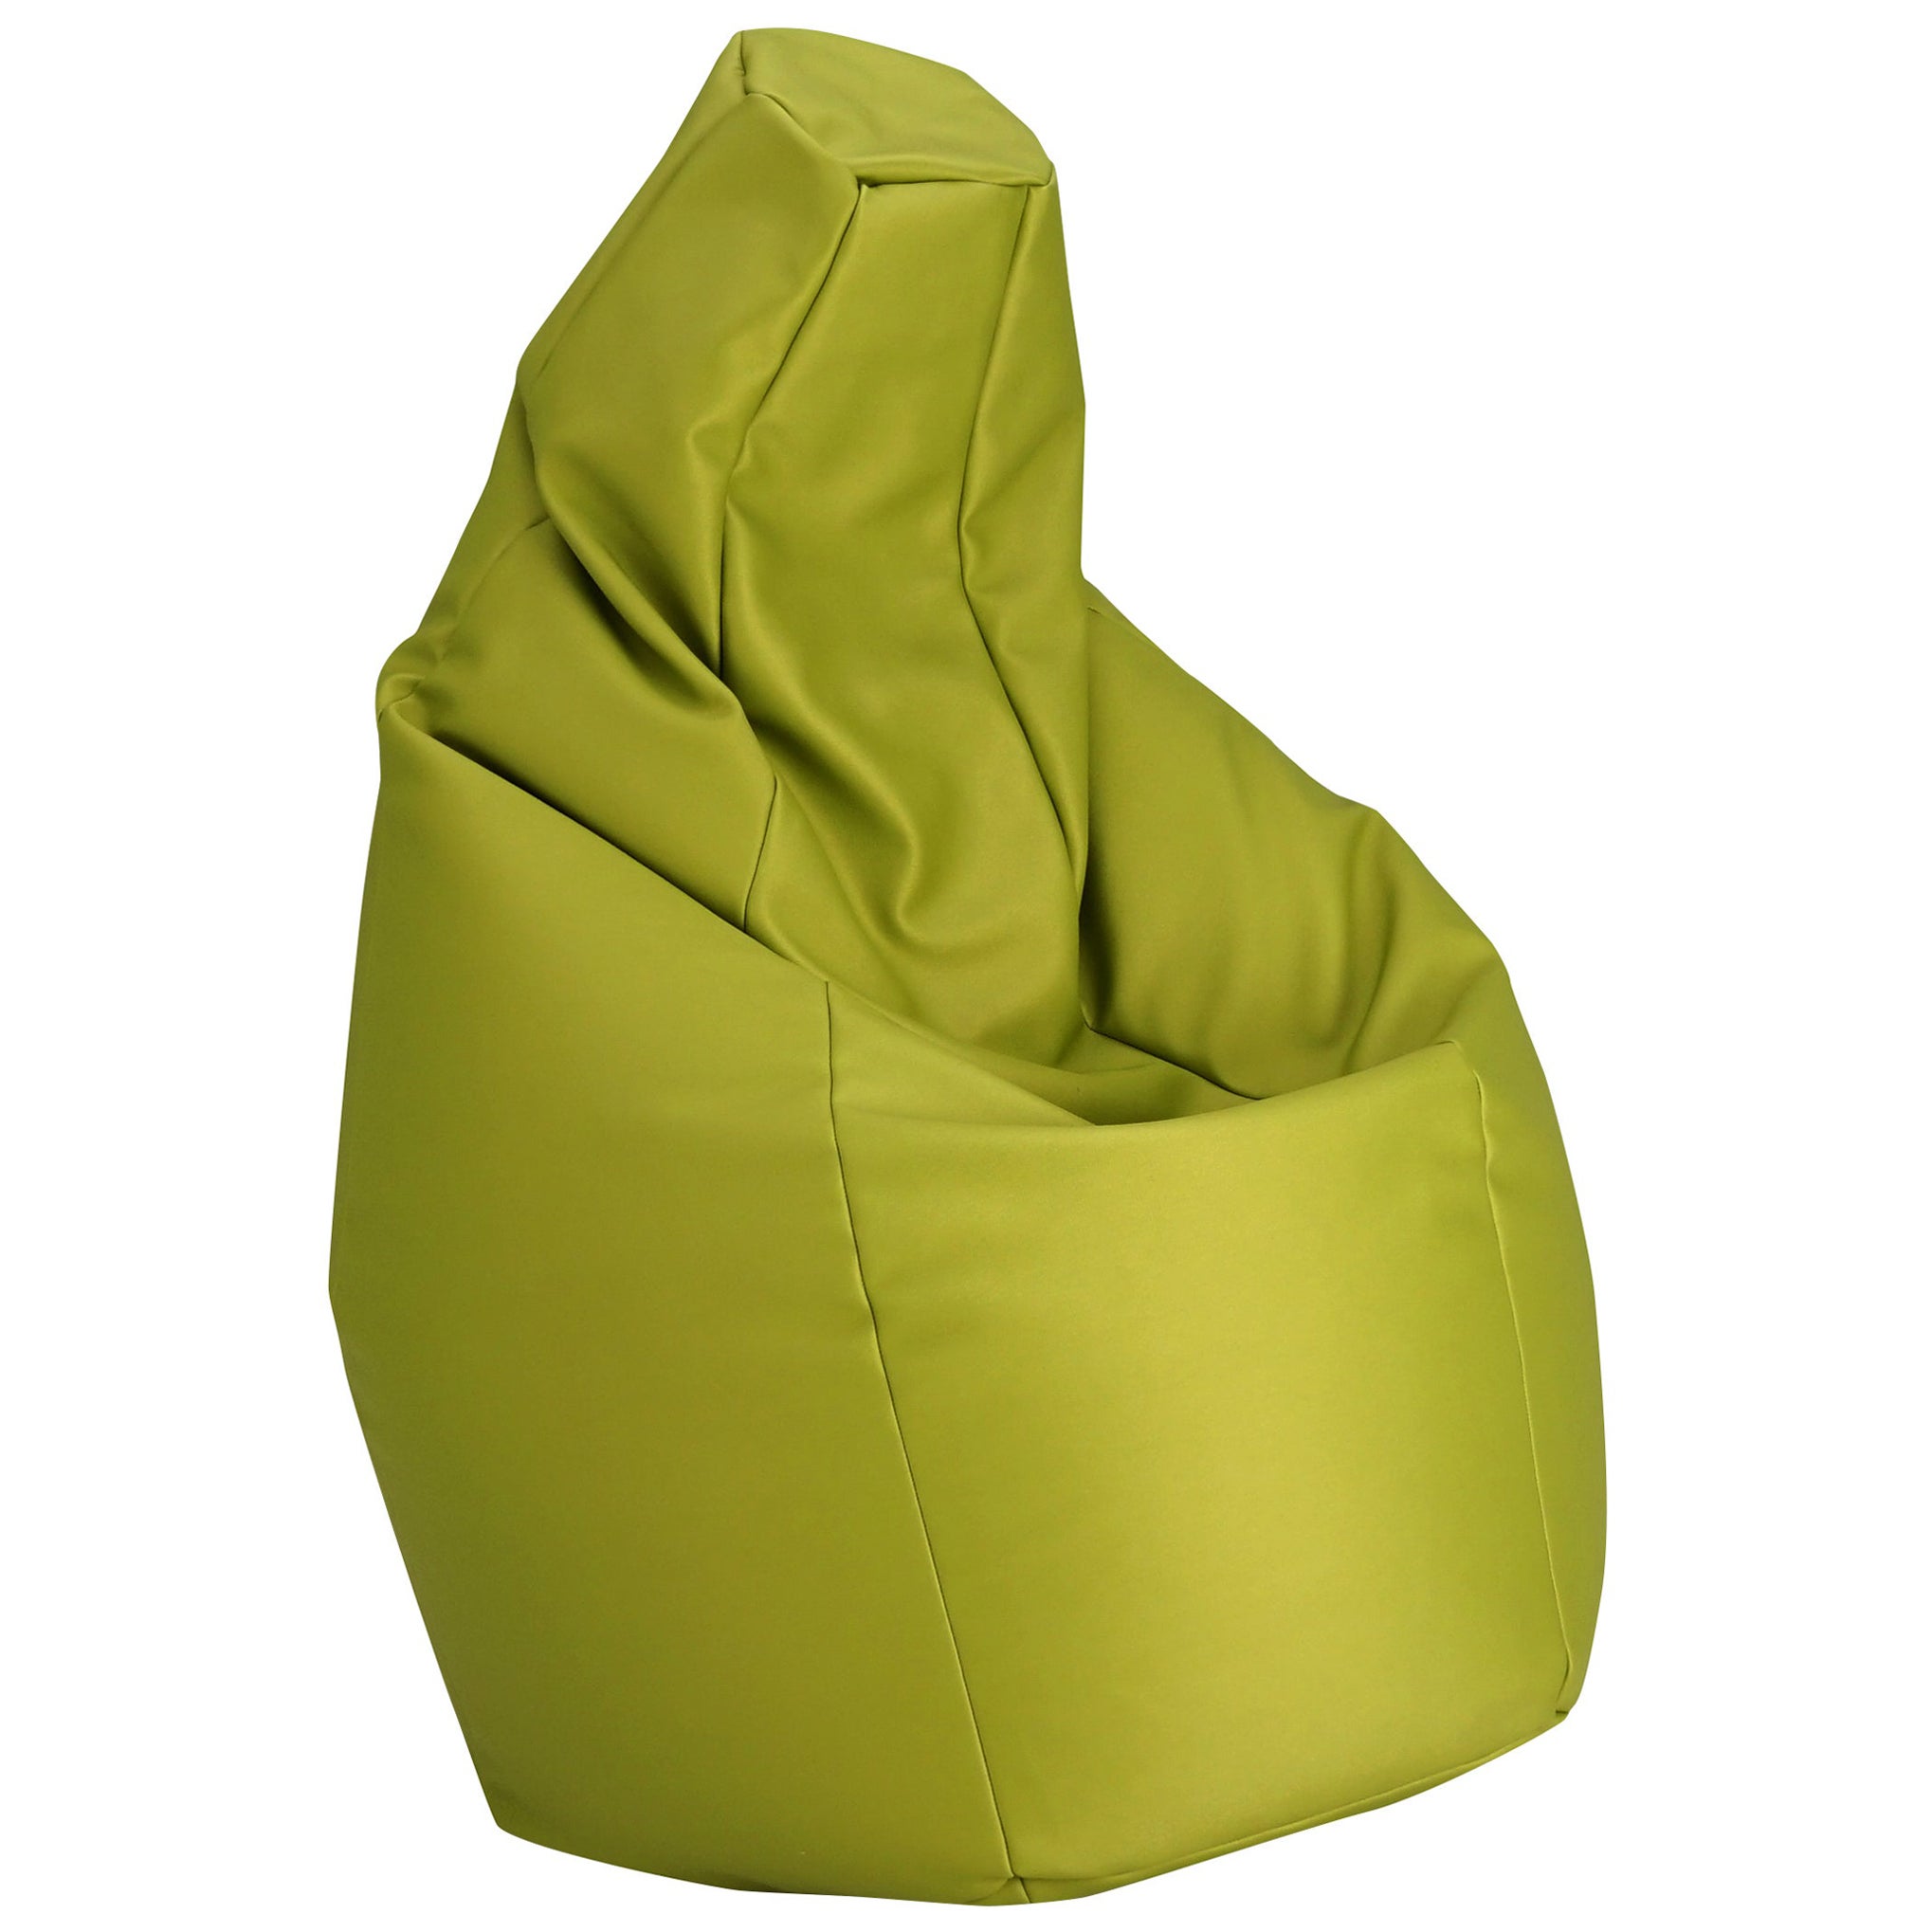 Zanotta Small Sacco in Green Vip Fabric by Gatti, Paolini, Teodoro For Sale